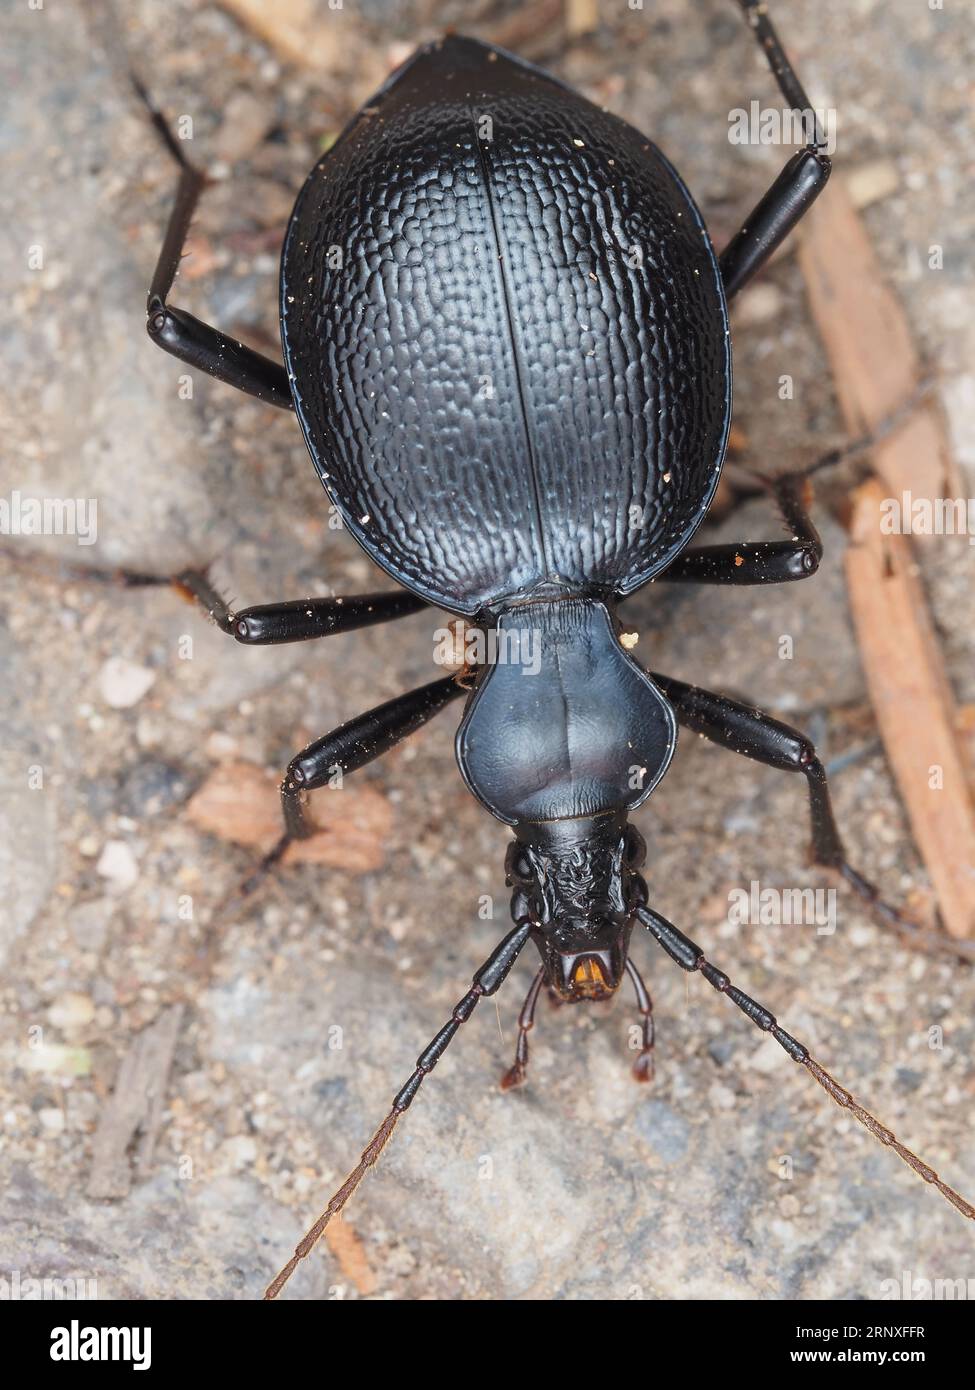 Ein Käfer, identifiziert als Scaphinotus sp. Mit einem kleinen Milben-Käfer-Makro Stockfoto